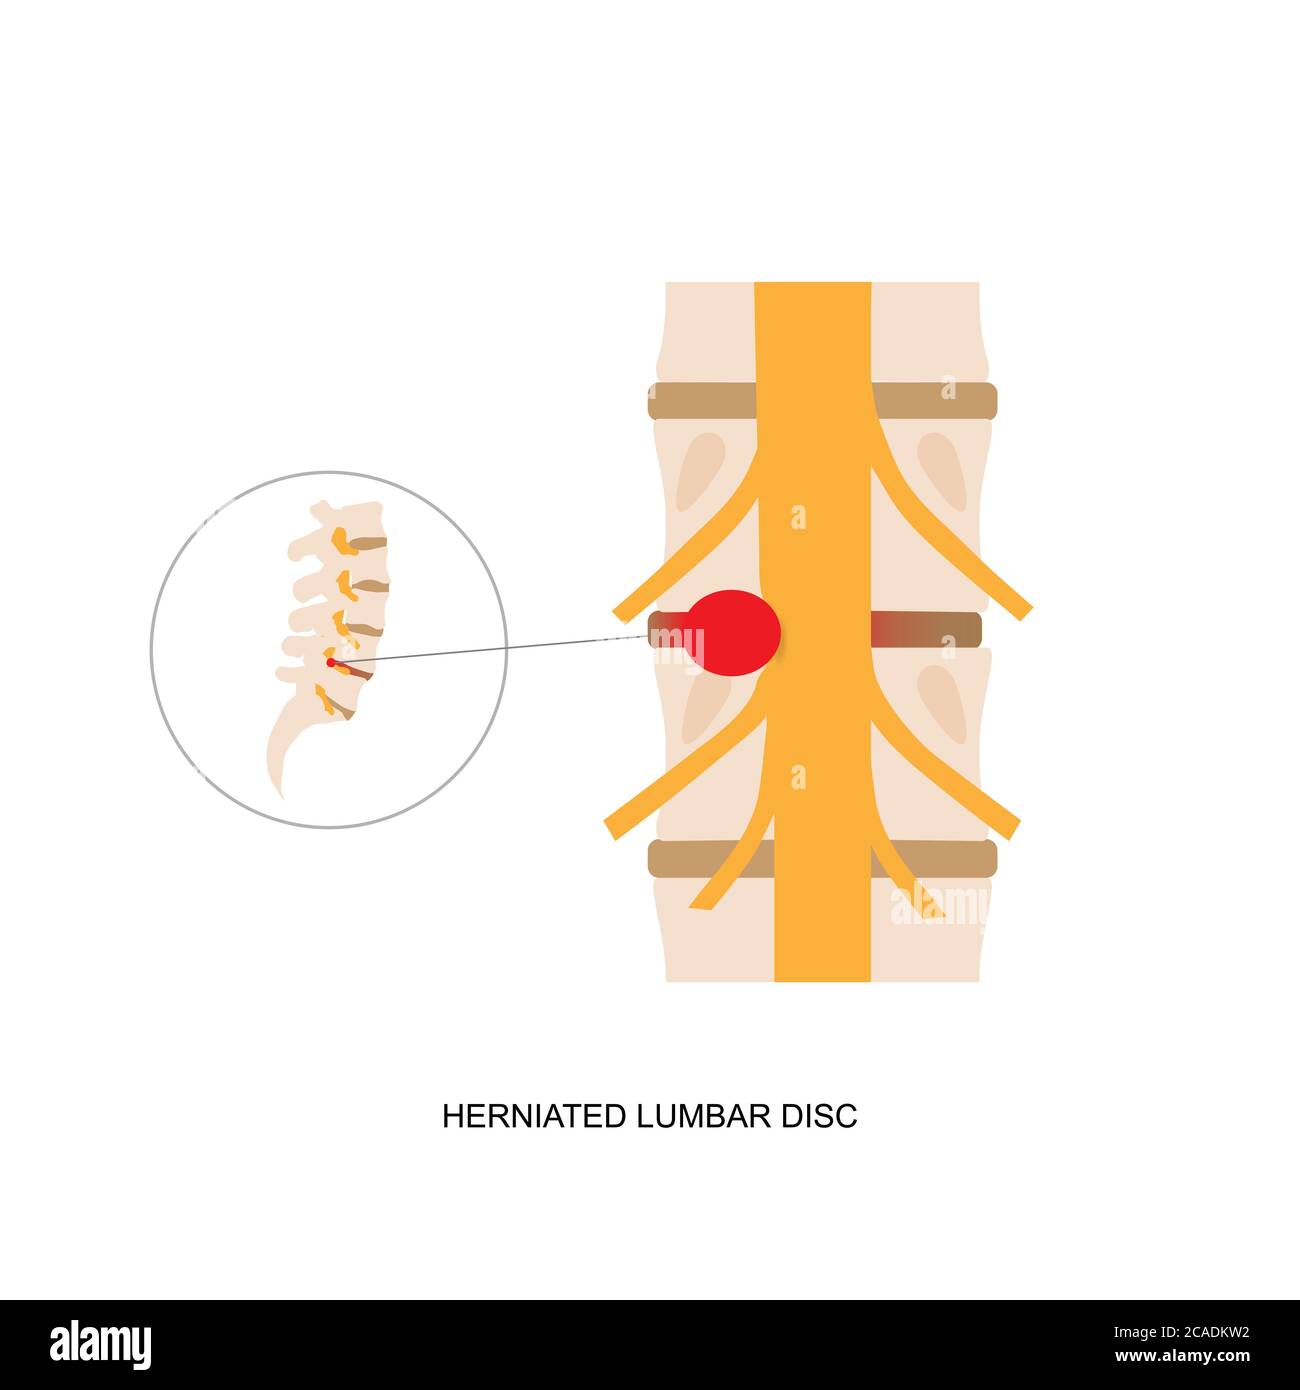 Illustrazione della dimostrazione del disco lombare erniato umano. L'erniazione del disco lombare può causare dolore alla schiena basso e sciatica Illustrazione Vettoriale